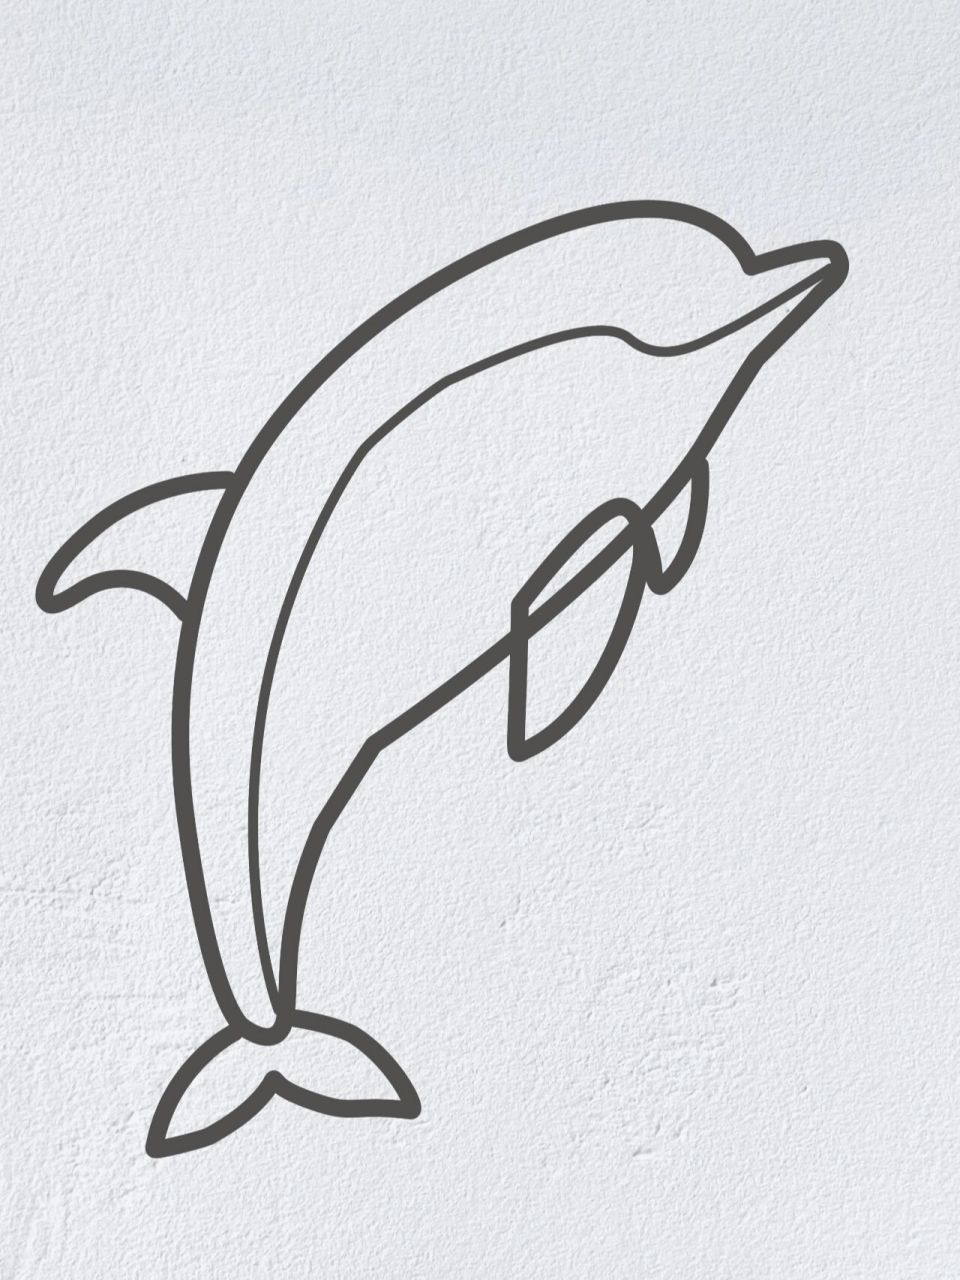 海豚简笔画步骤图图片